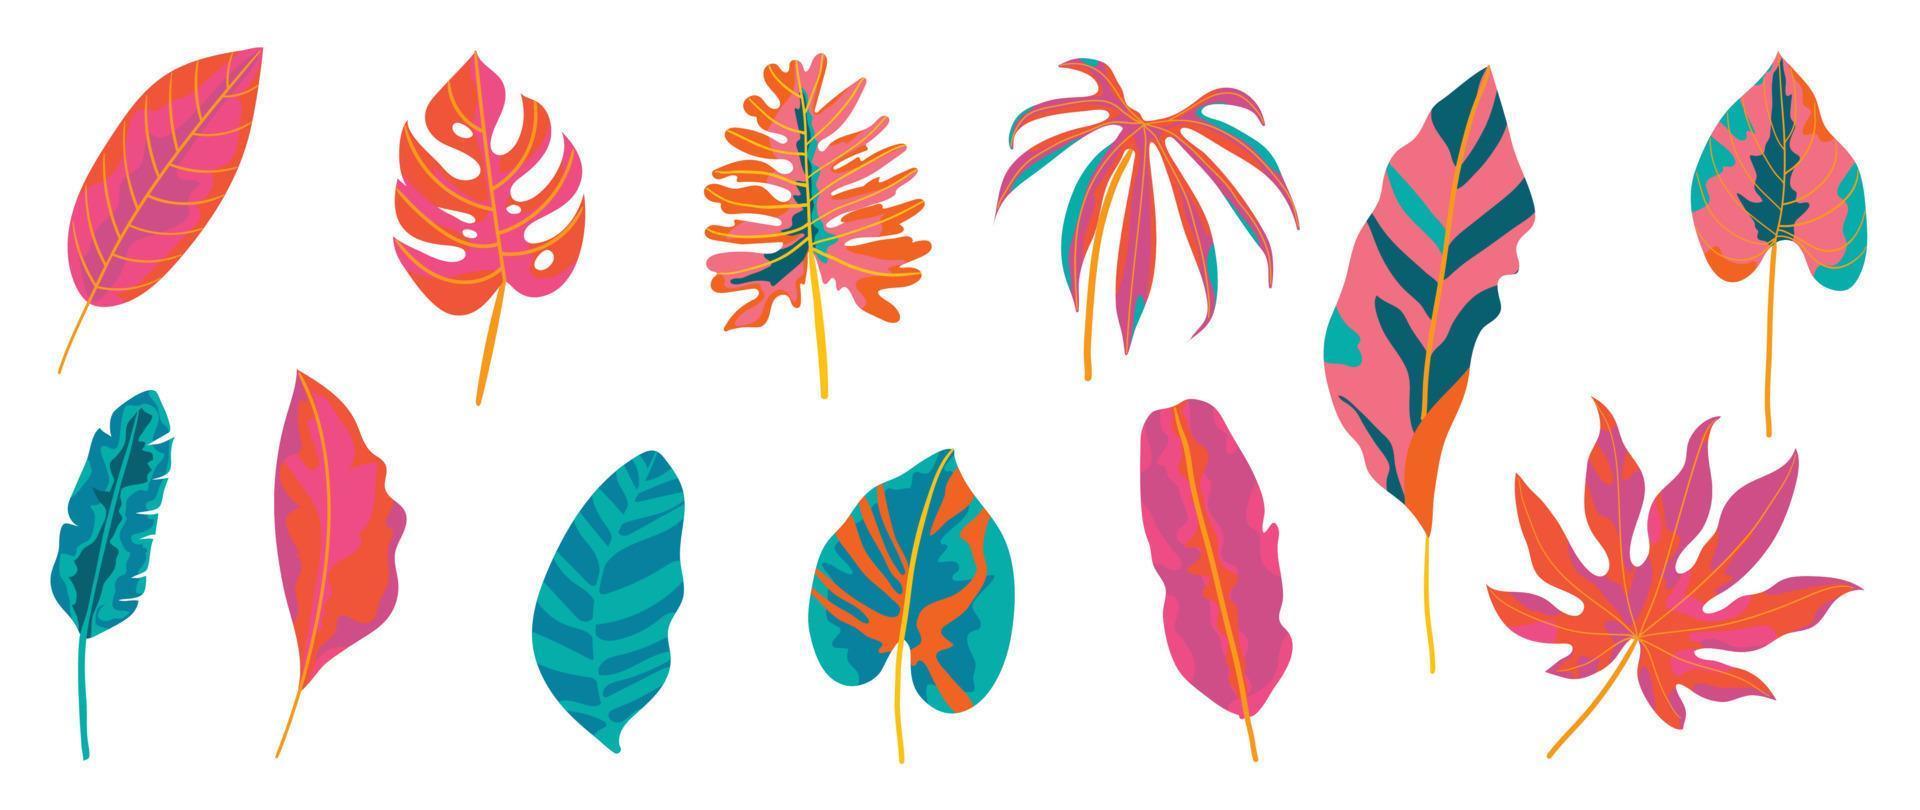 juego de vectores de hojas tropicales pintadas a mano. follaje colorido exótico botánico, plantas de la selva, estilo de pintura de hojas de palma aislado sobre fondo blanco. diseño para cosmética, producto, spa, decoración.